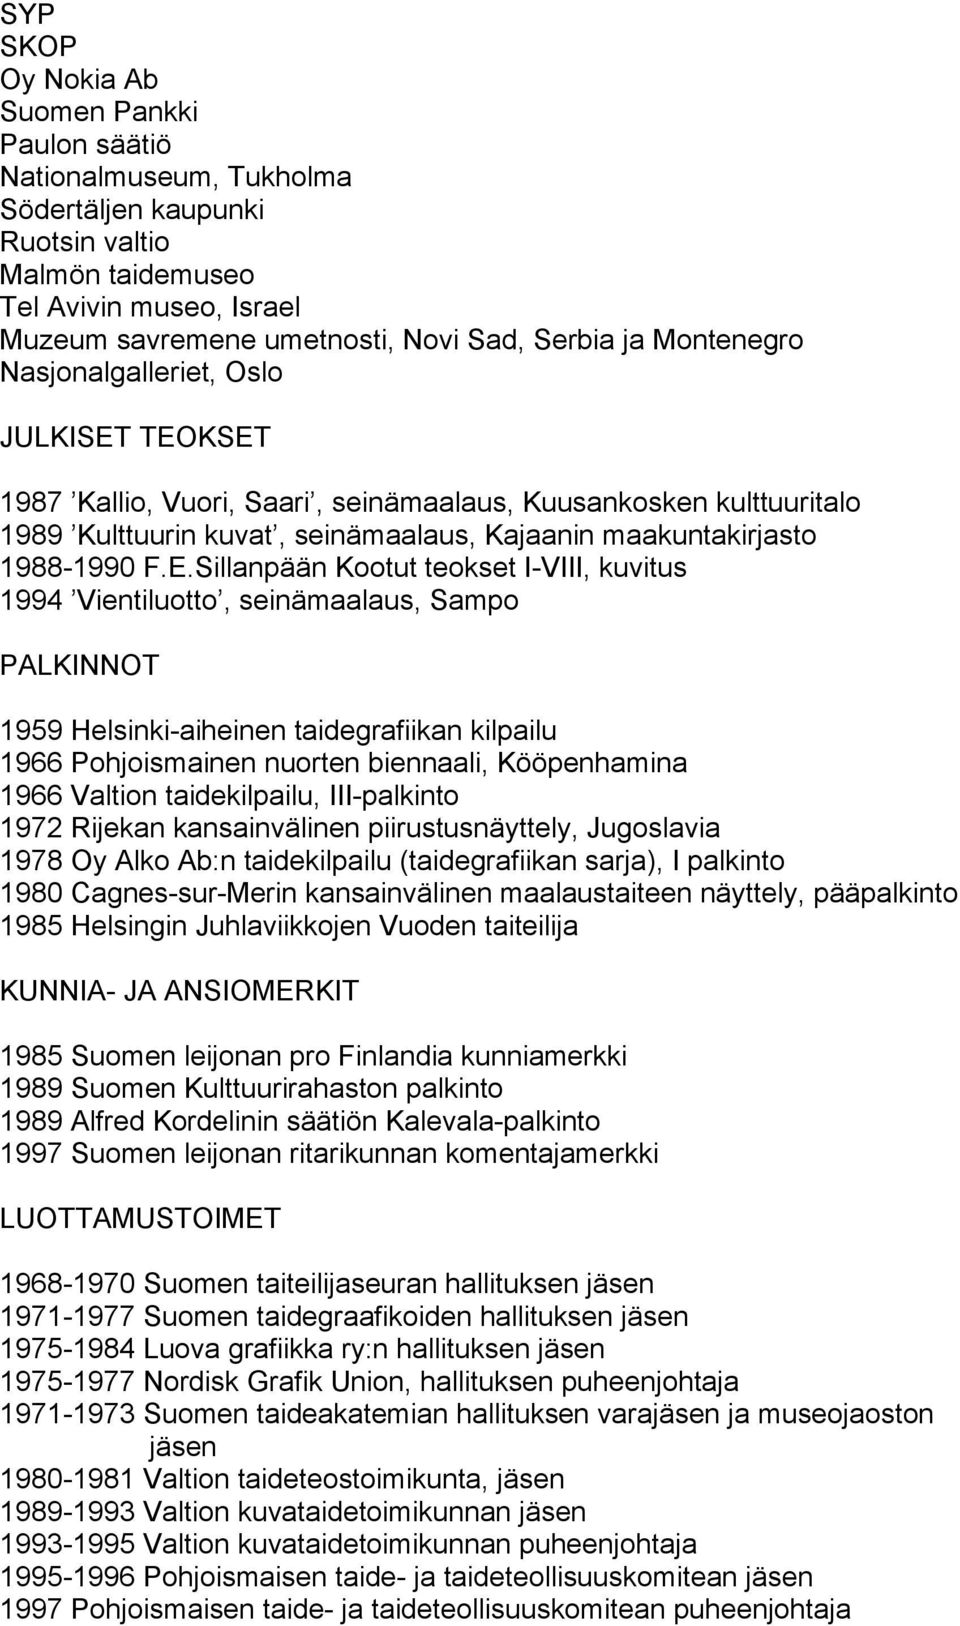 TEOKSET 1987 Kallio, Vuori, Saari, seinämaalaus, Kuusankosken kulttuuritalo 1989 Kulttuurin kuvat, seinämaalaus, Kajaanin maakuntakirjasto 1988-1990 F.E.Sillanpään Kootut teokset I-VIII, kuvitus 1994